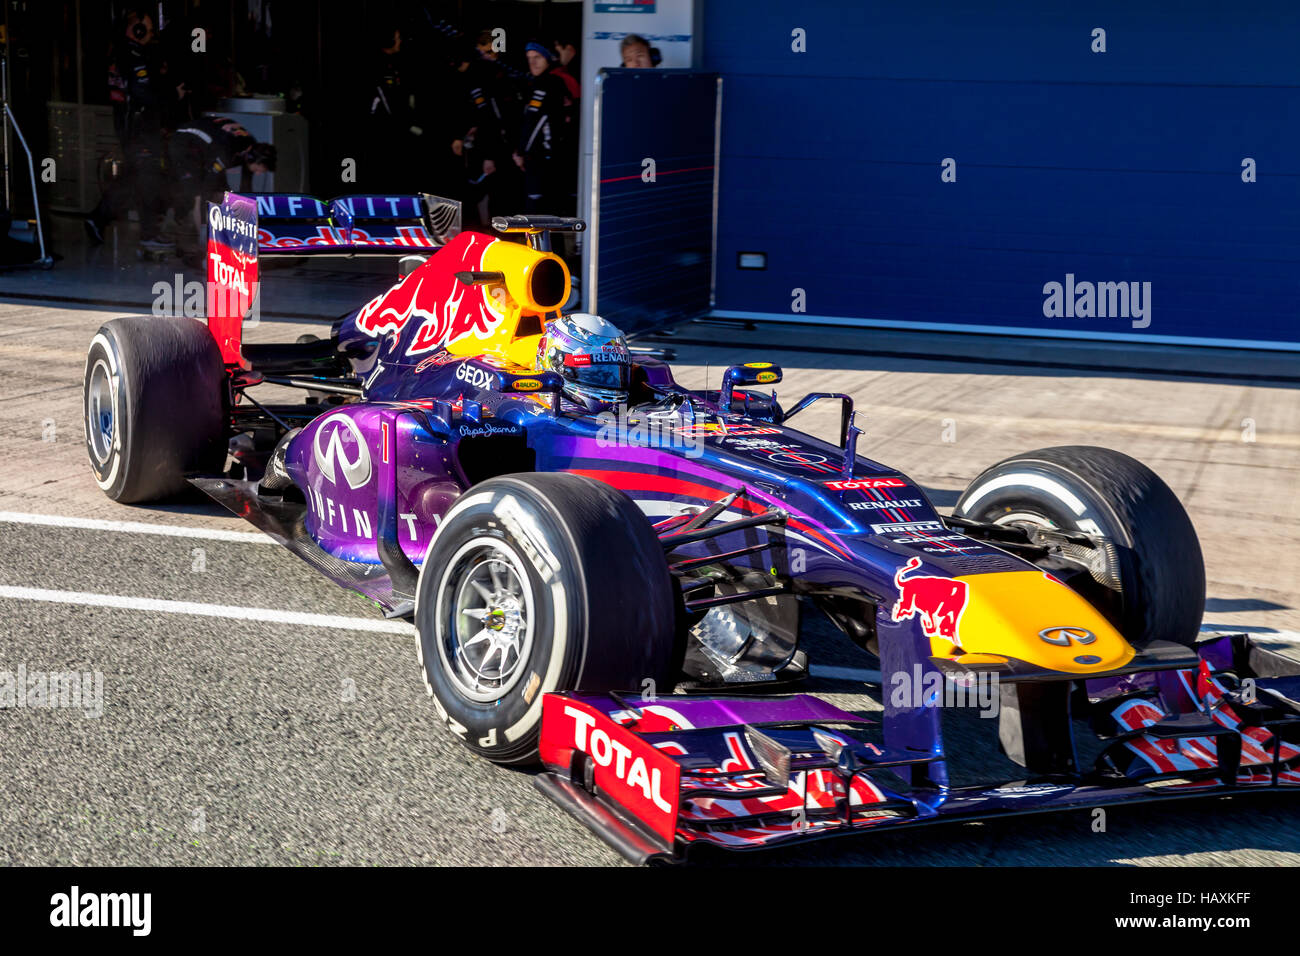 Team Bull F1, Sebastian Vettel, 2013 Stock Photo - Alamy